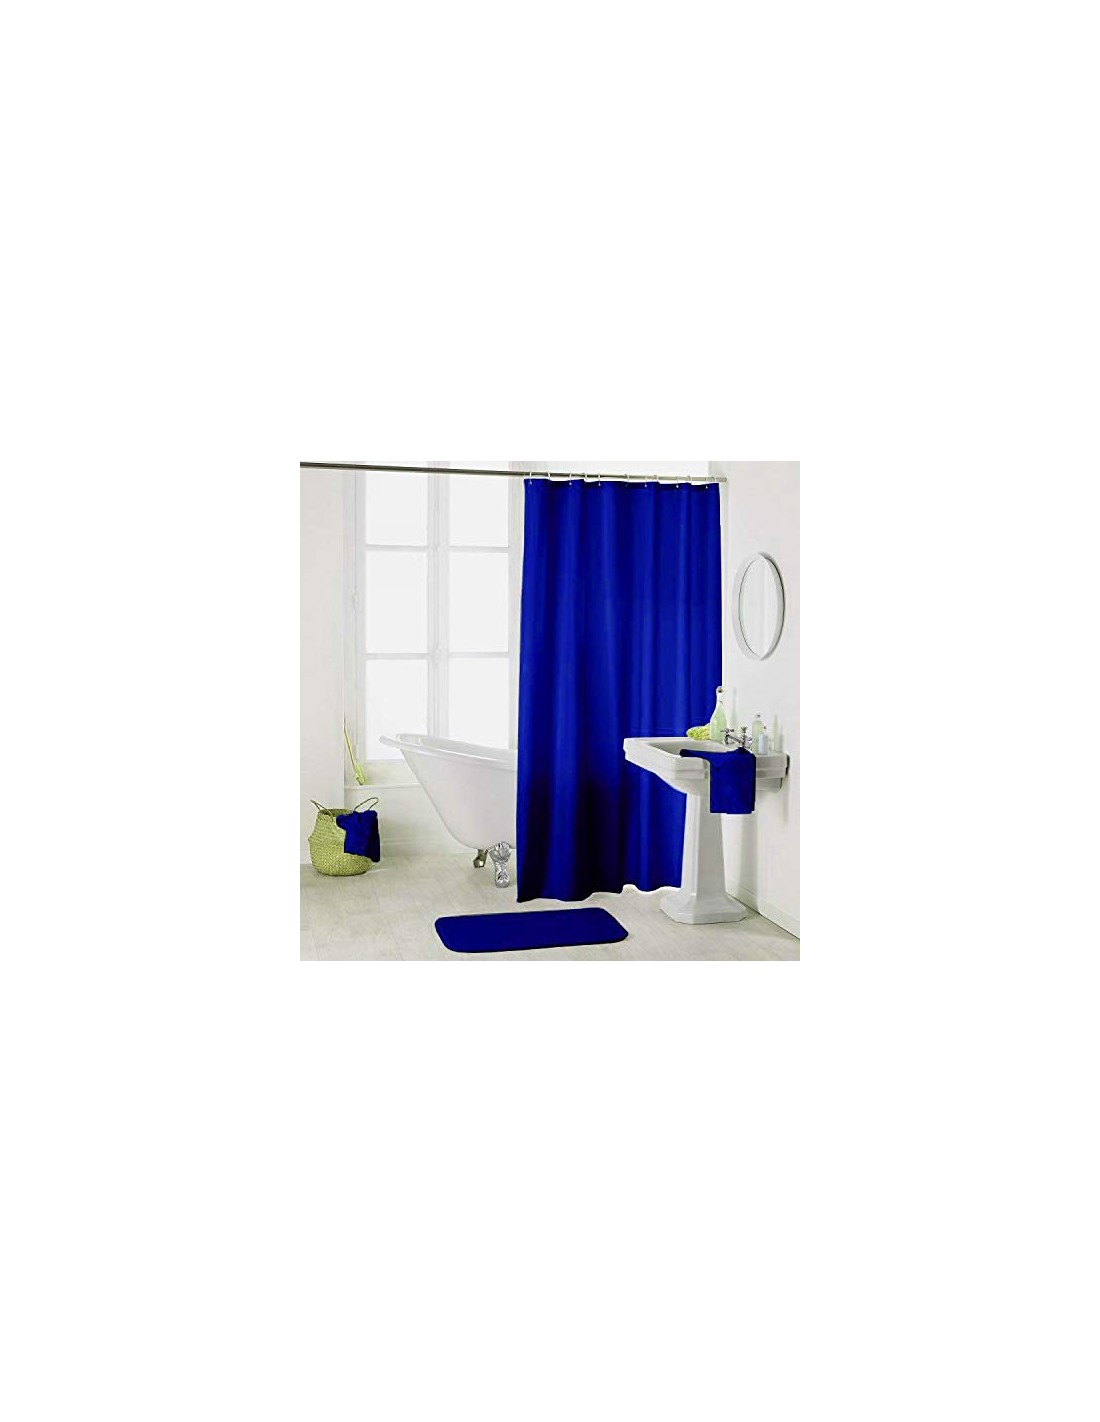 MSV Anillas para cortina de ducha (12 ud.)